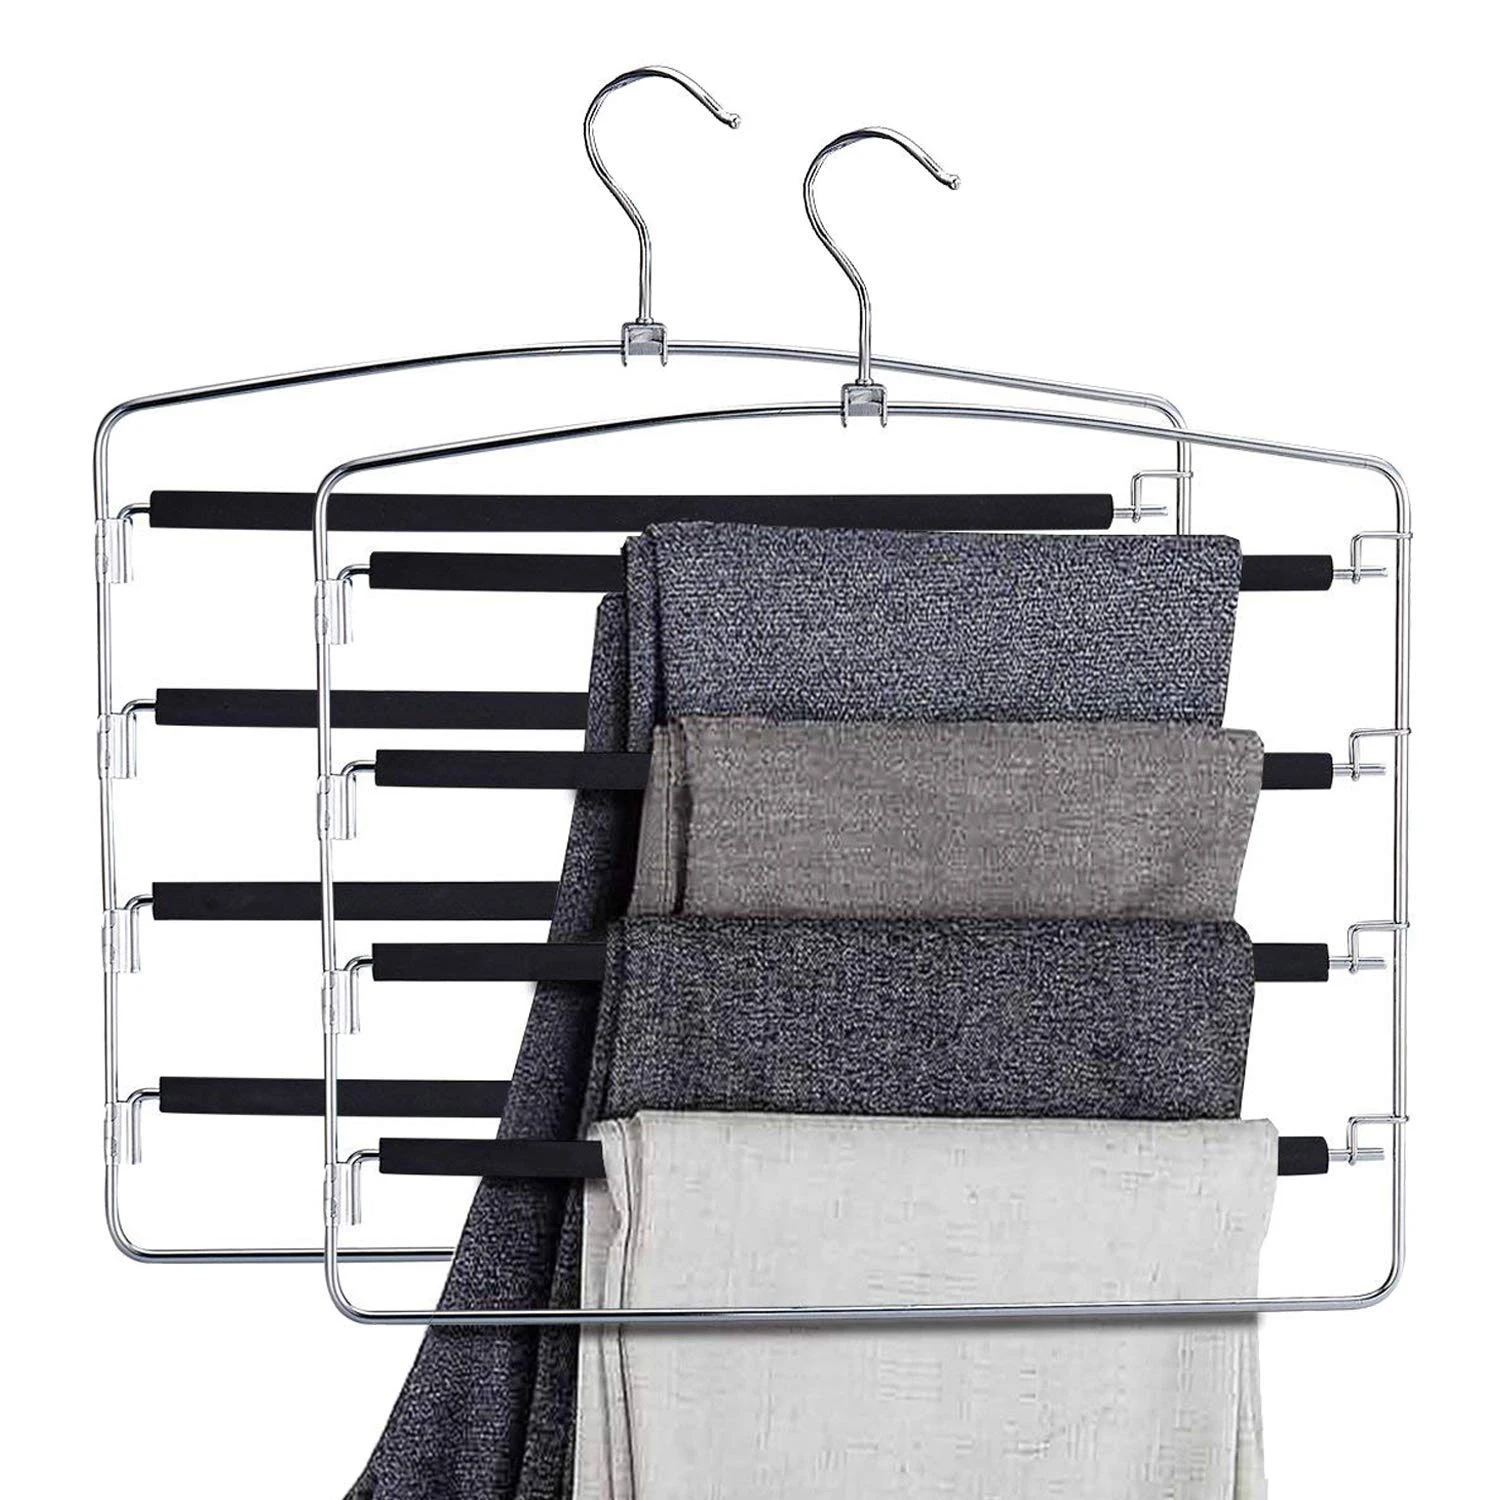 Aliexpress.com : Buy HOT SALE Pants Hangers Slacks Hangers